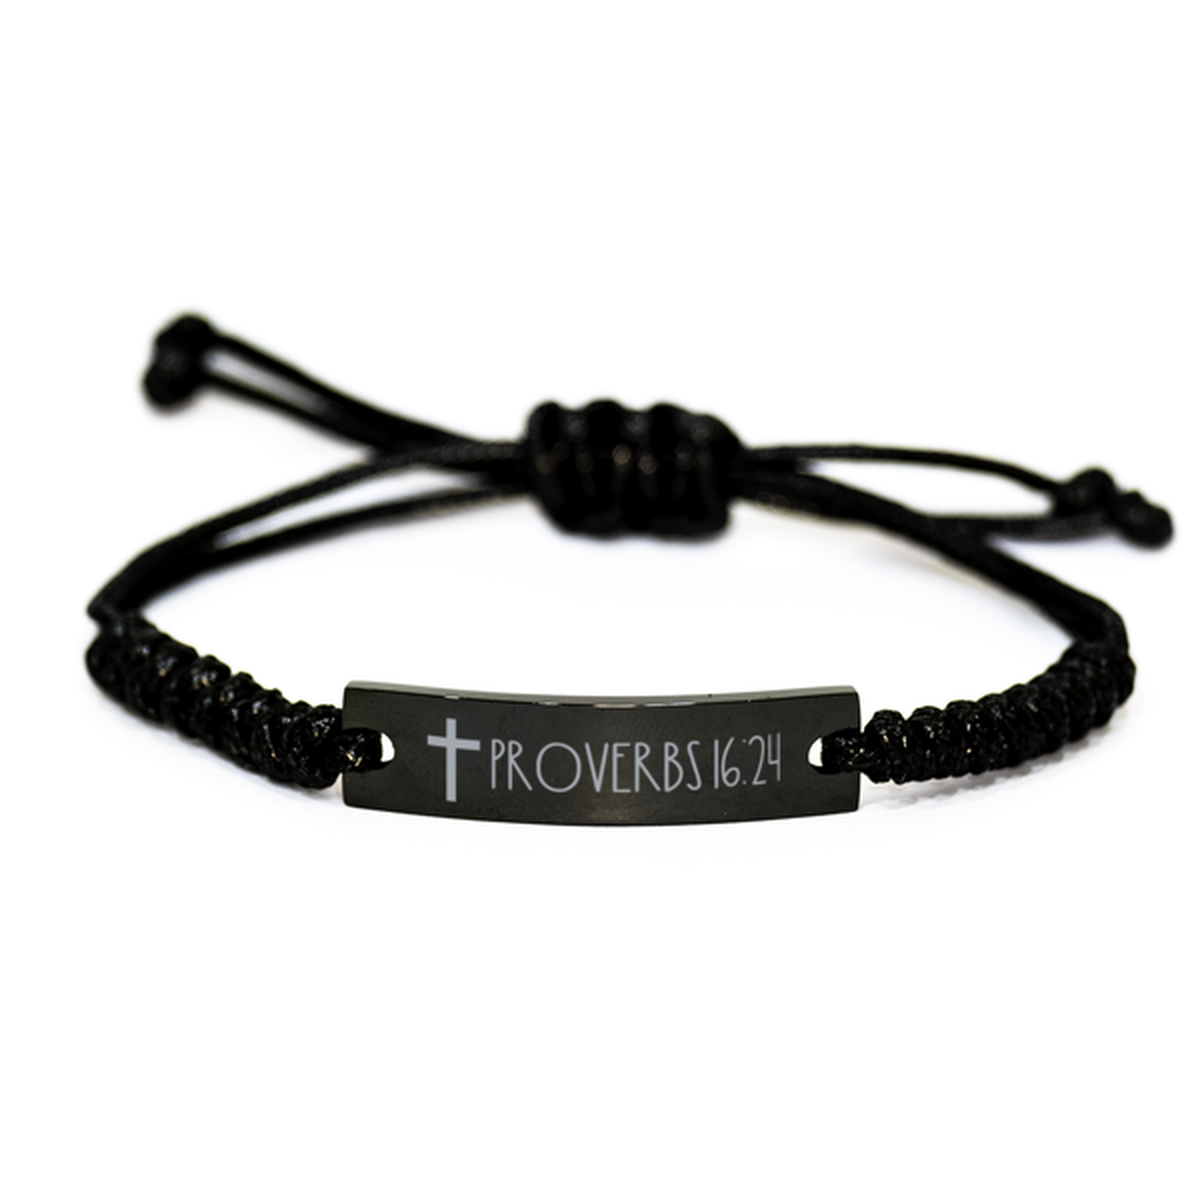 Bible Verse Bracelet, Proverbs 16 24 Bracelet, Christian Bracelet for Men Women, Black Braided Rope Bracelet, Birthday, Christmas Gift.